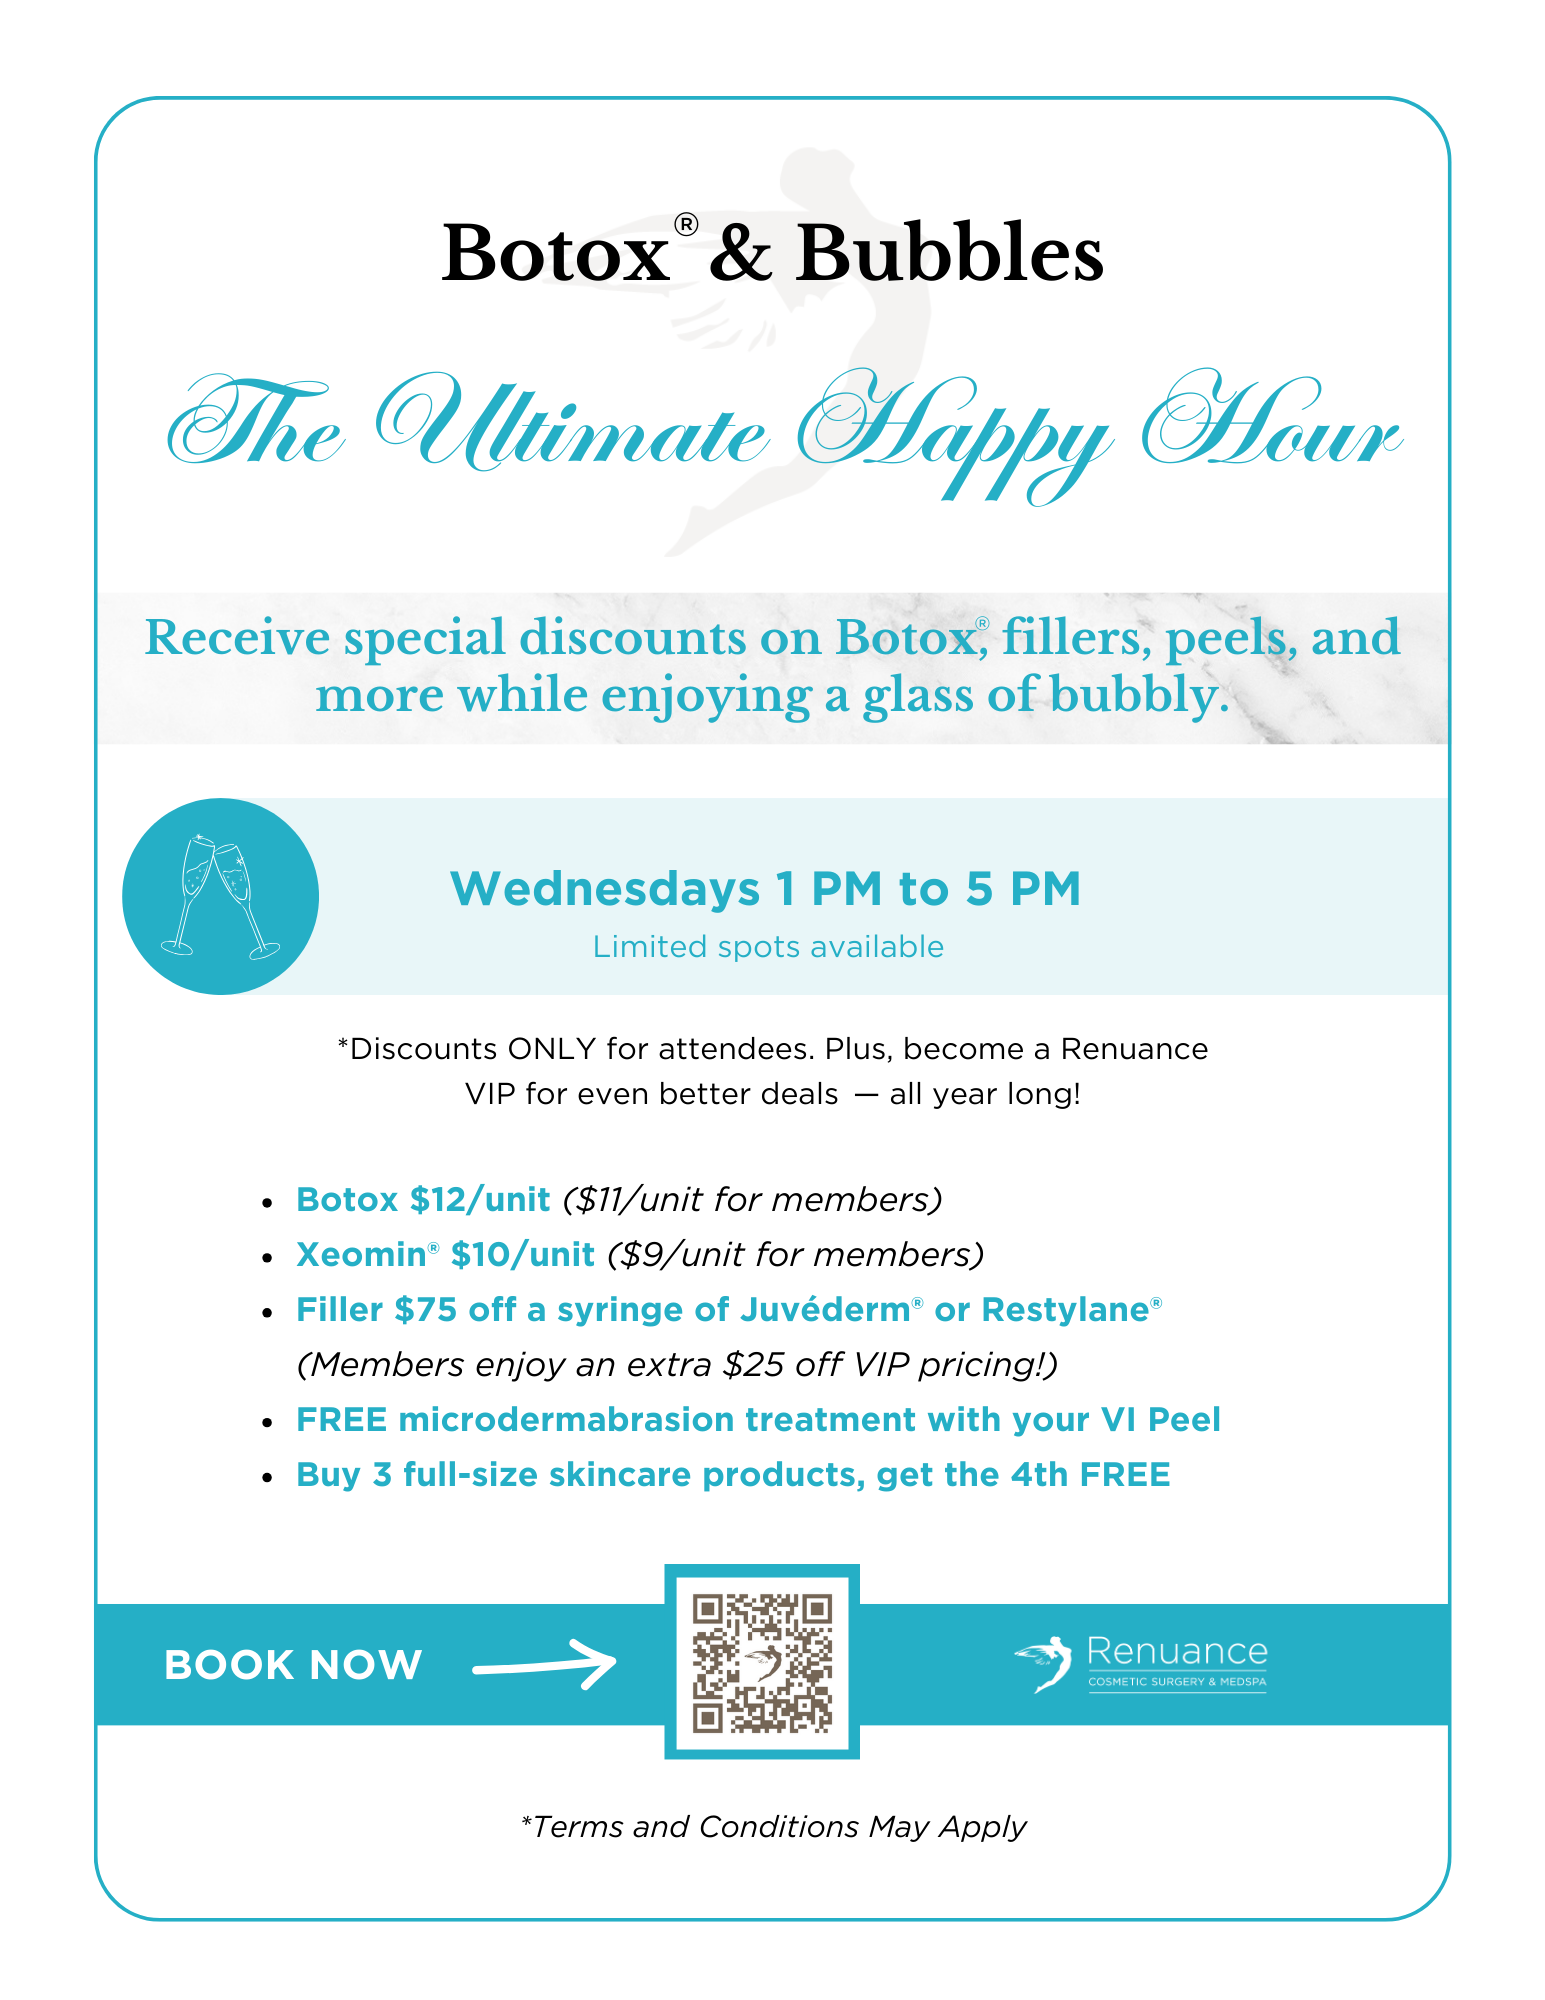 Renuance Botox & Bubbles